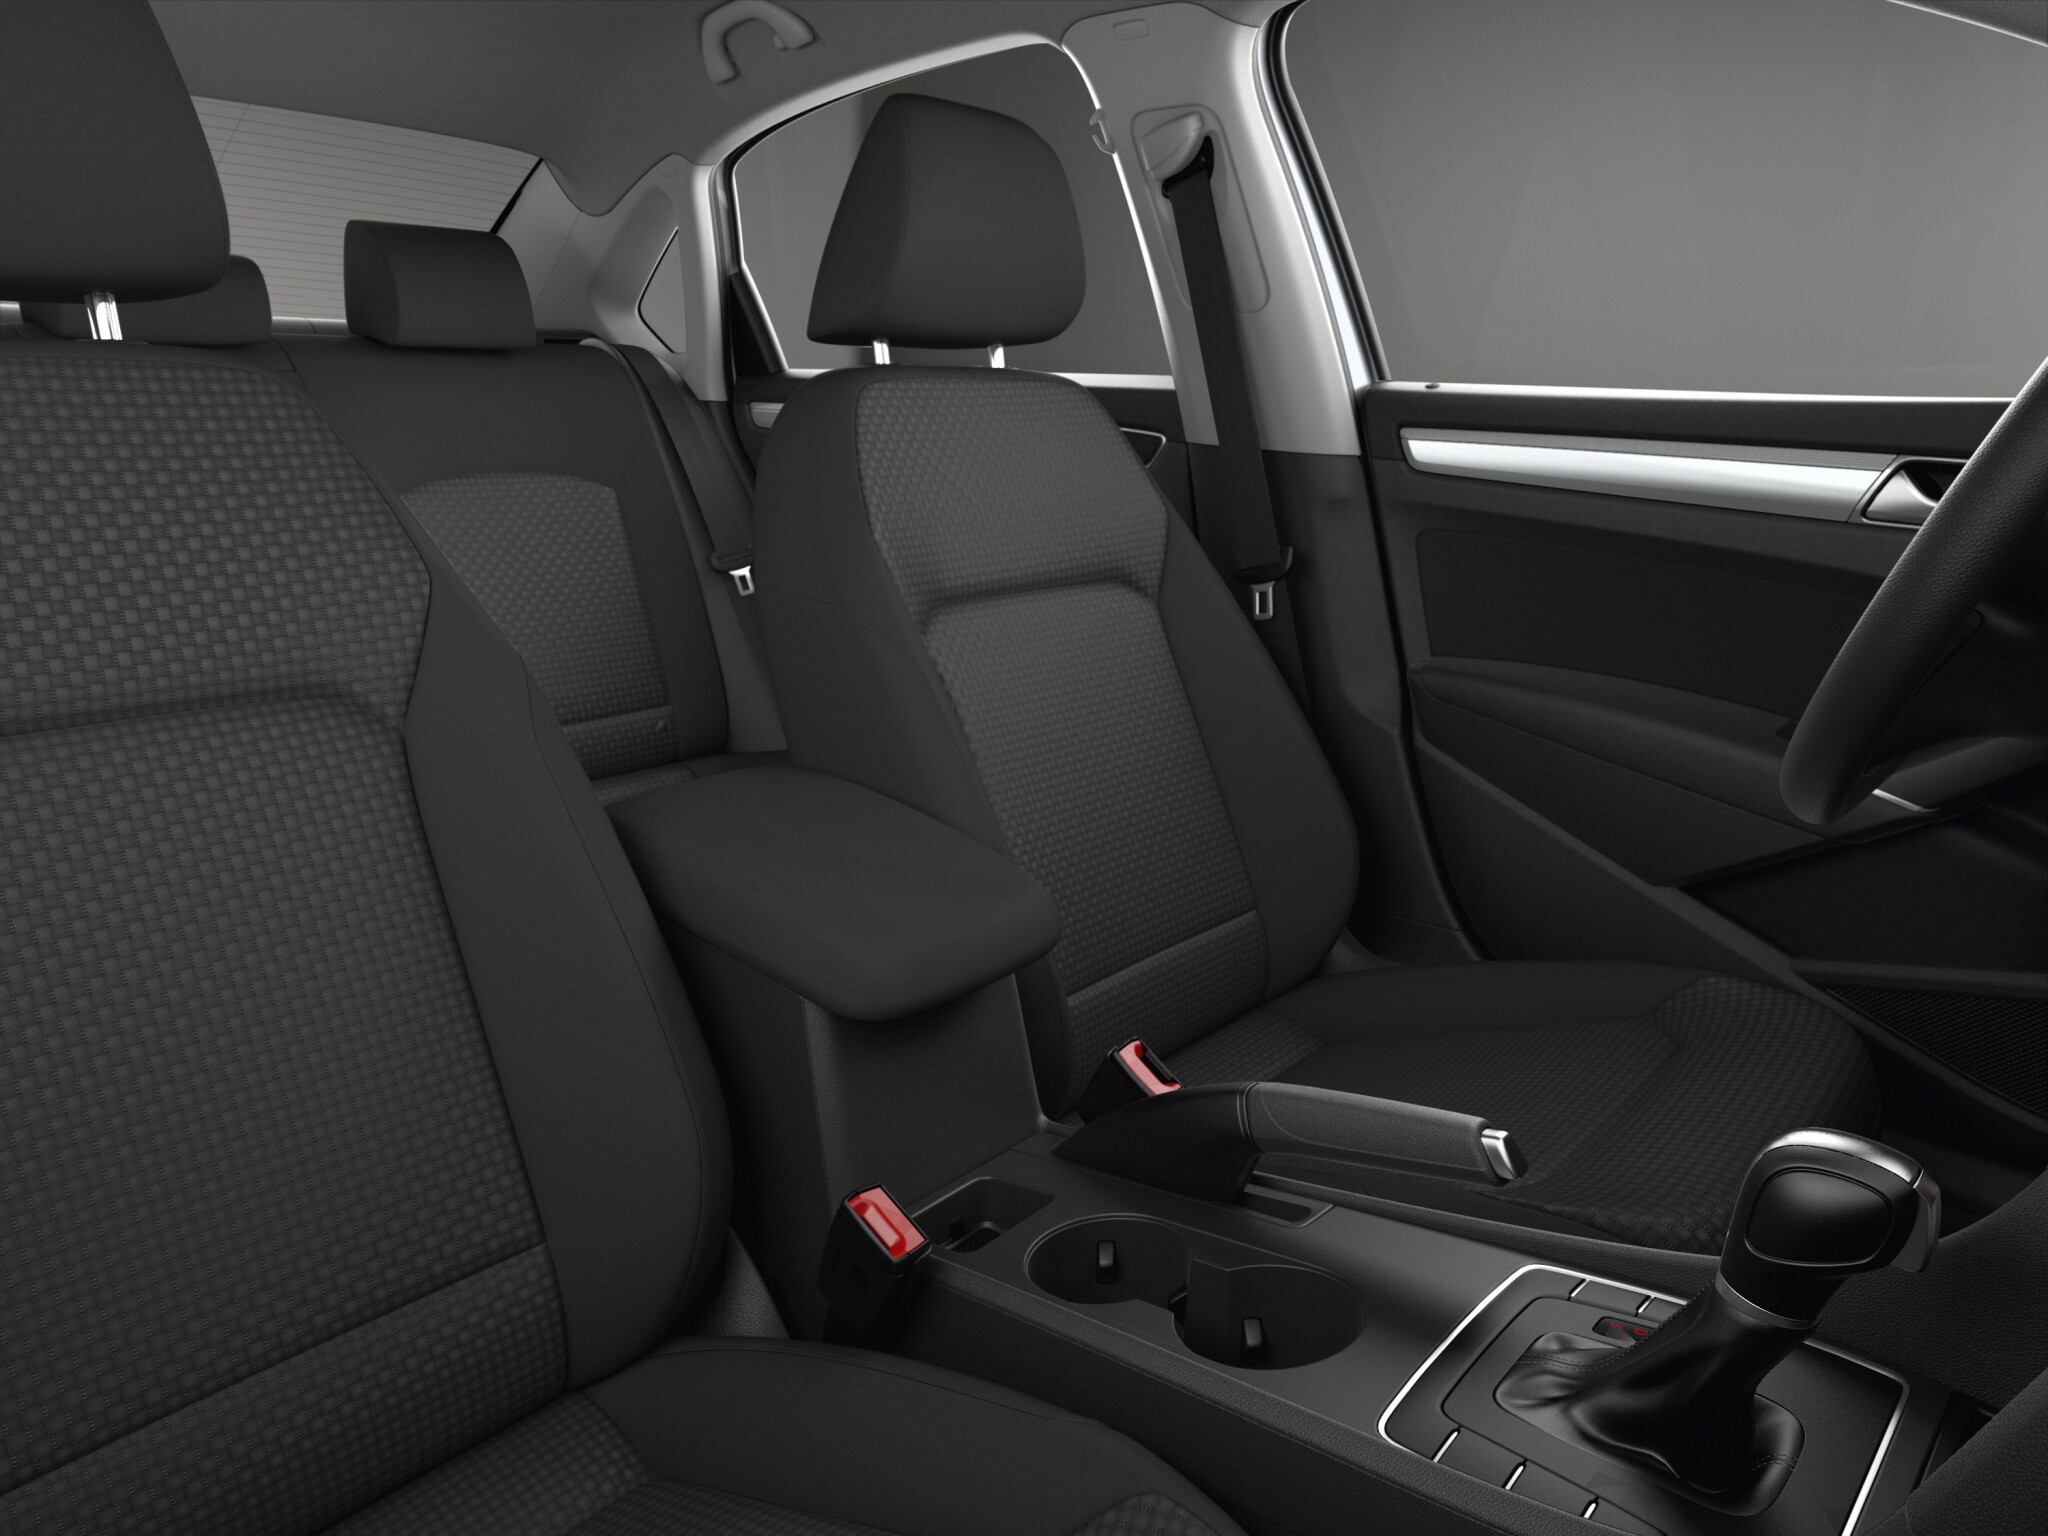 Volkswagen Passat S interior front seat view 